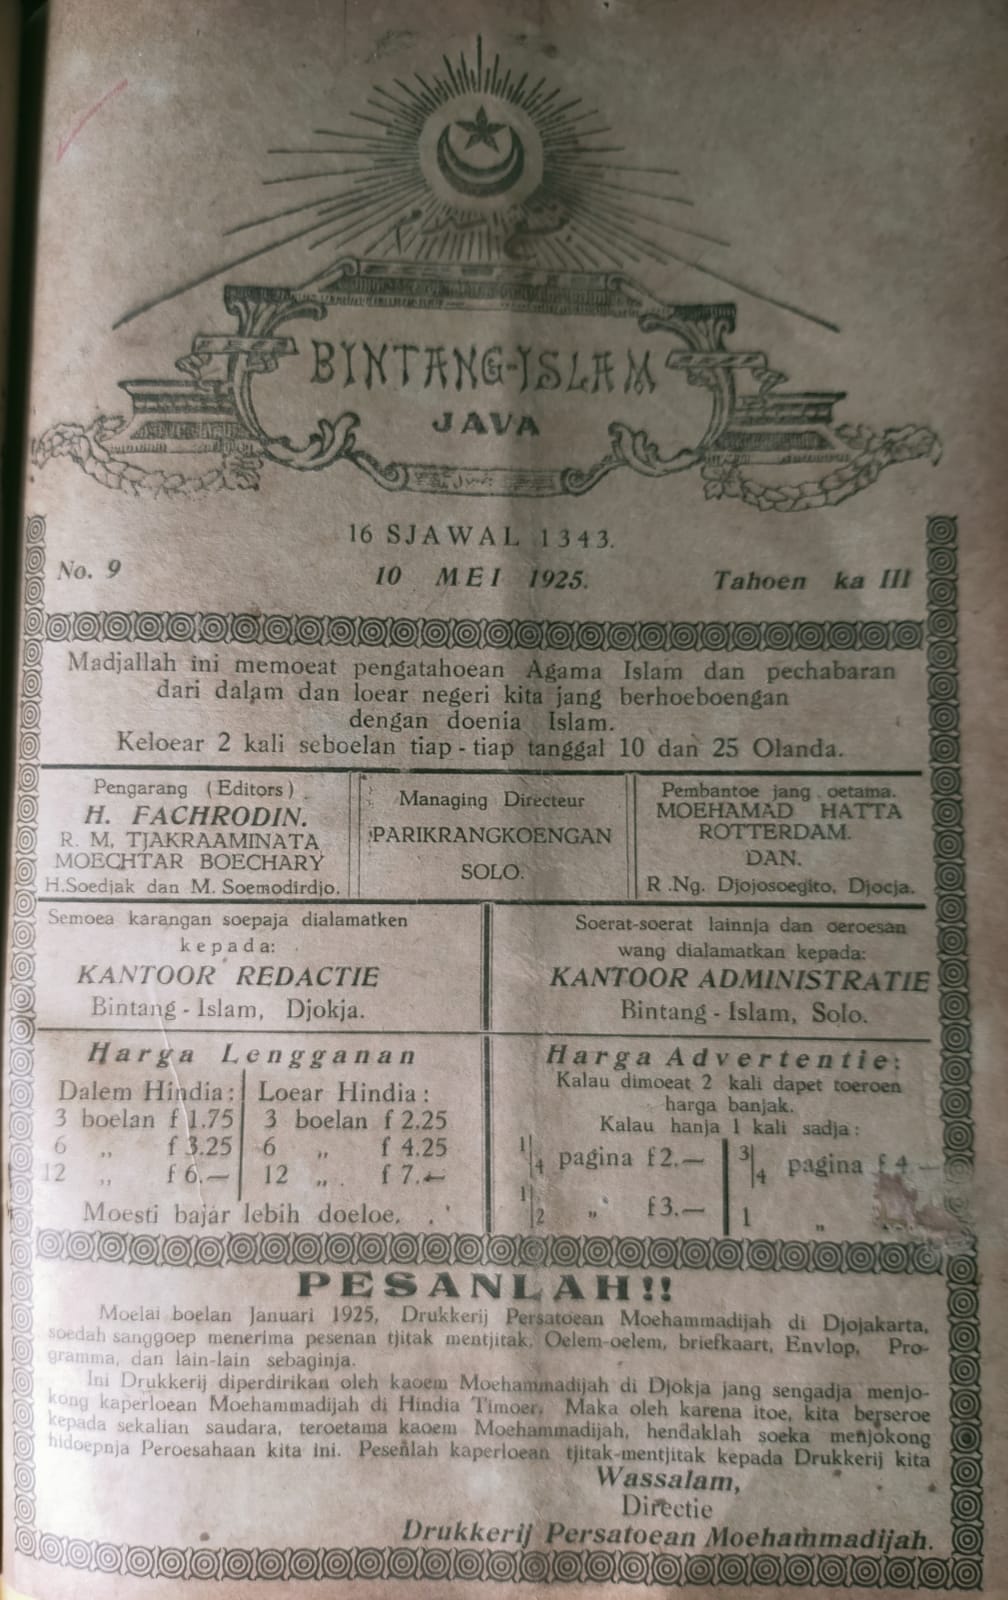 Arsip Bintang Islam, yang memberitakan salat Idulfitri outdoor pertama oleh Muhammadiyah. (Arsip milik penulis)